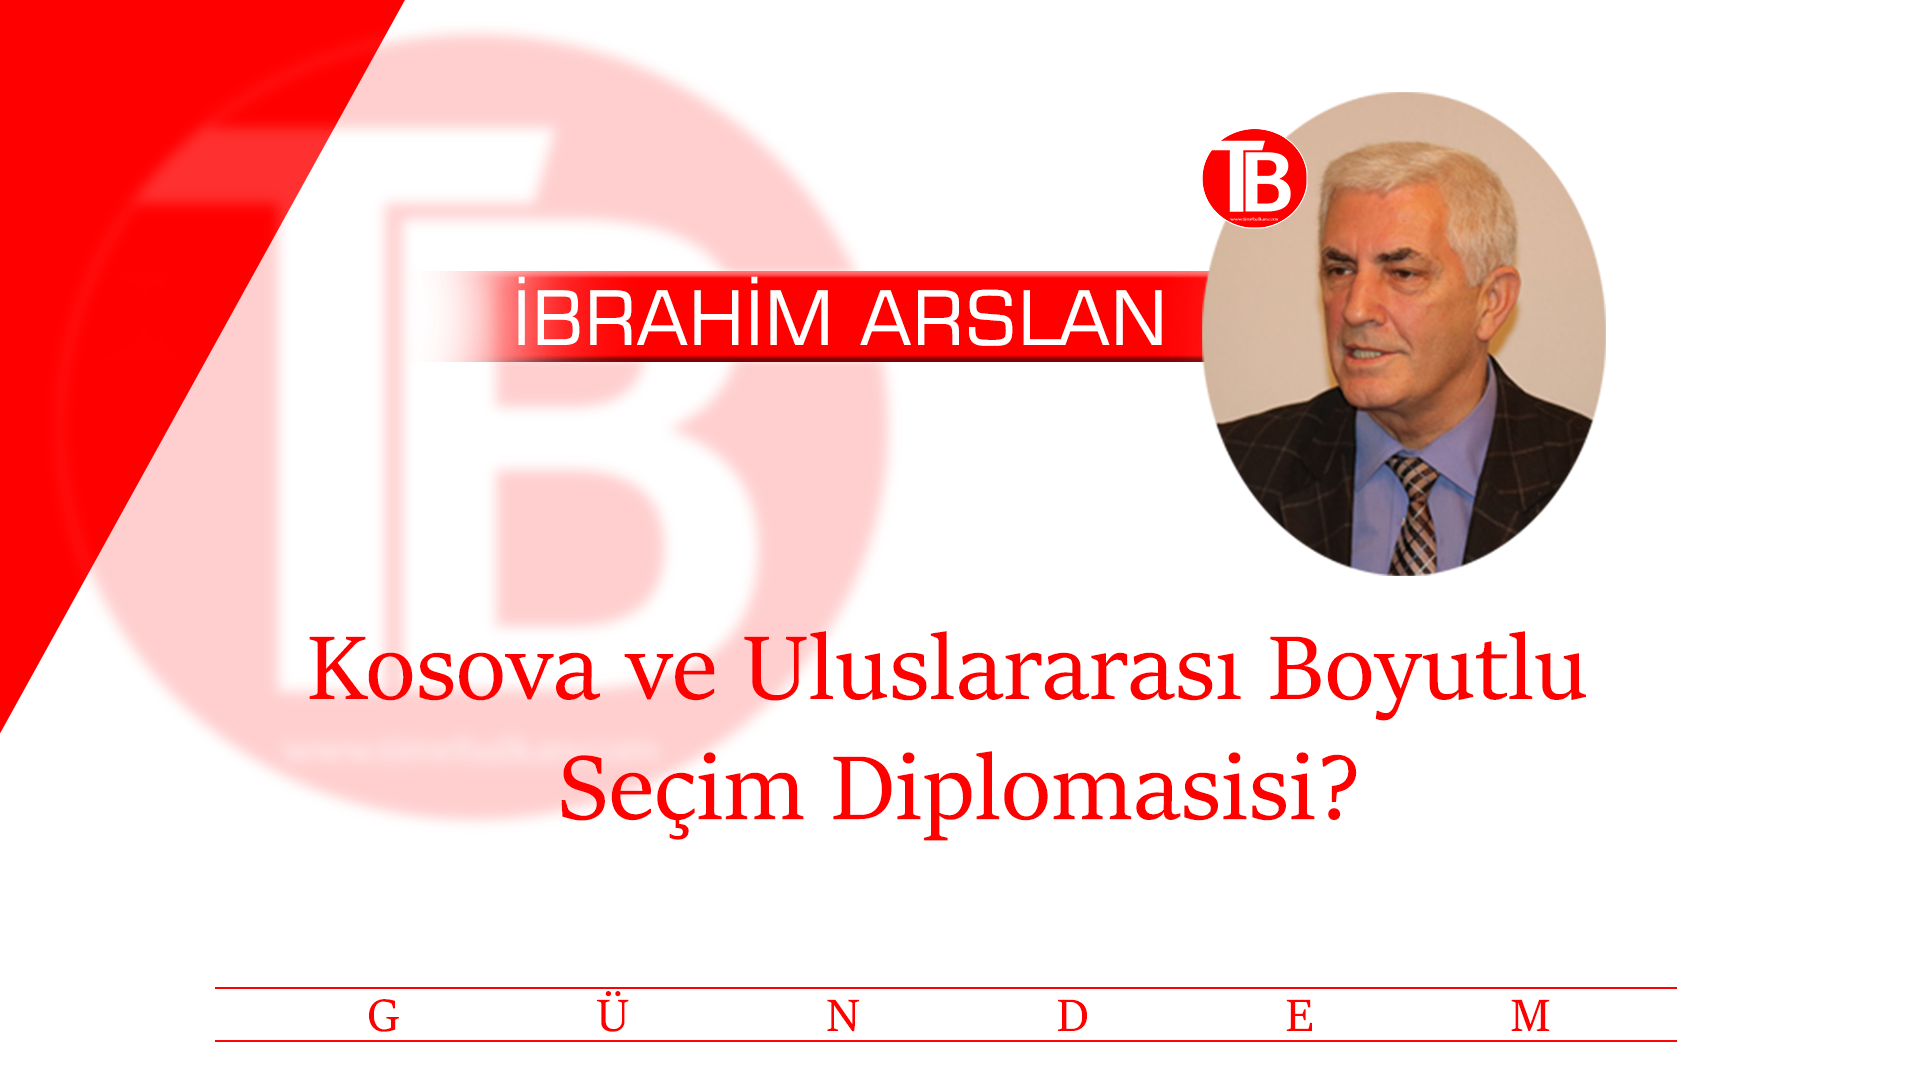 Kosova ve Uluslararası Boyutlu Seçim Diplomasisi?